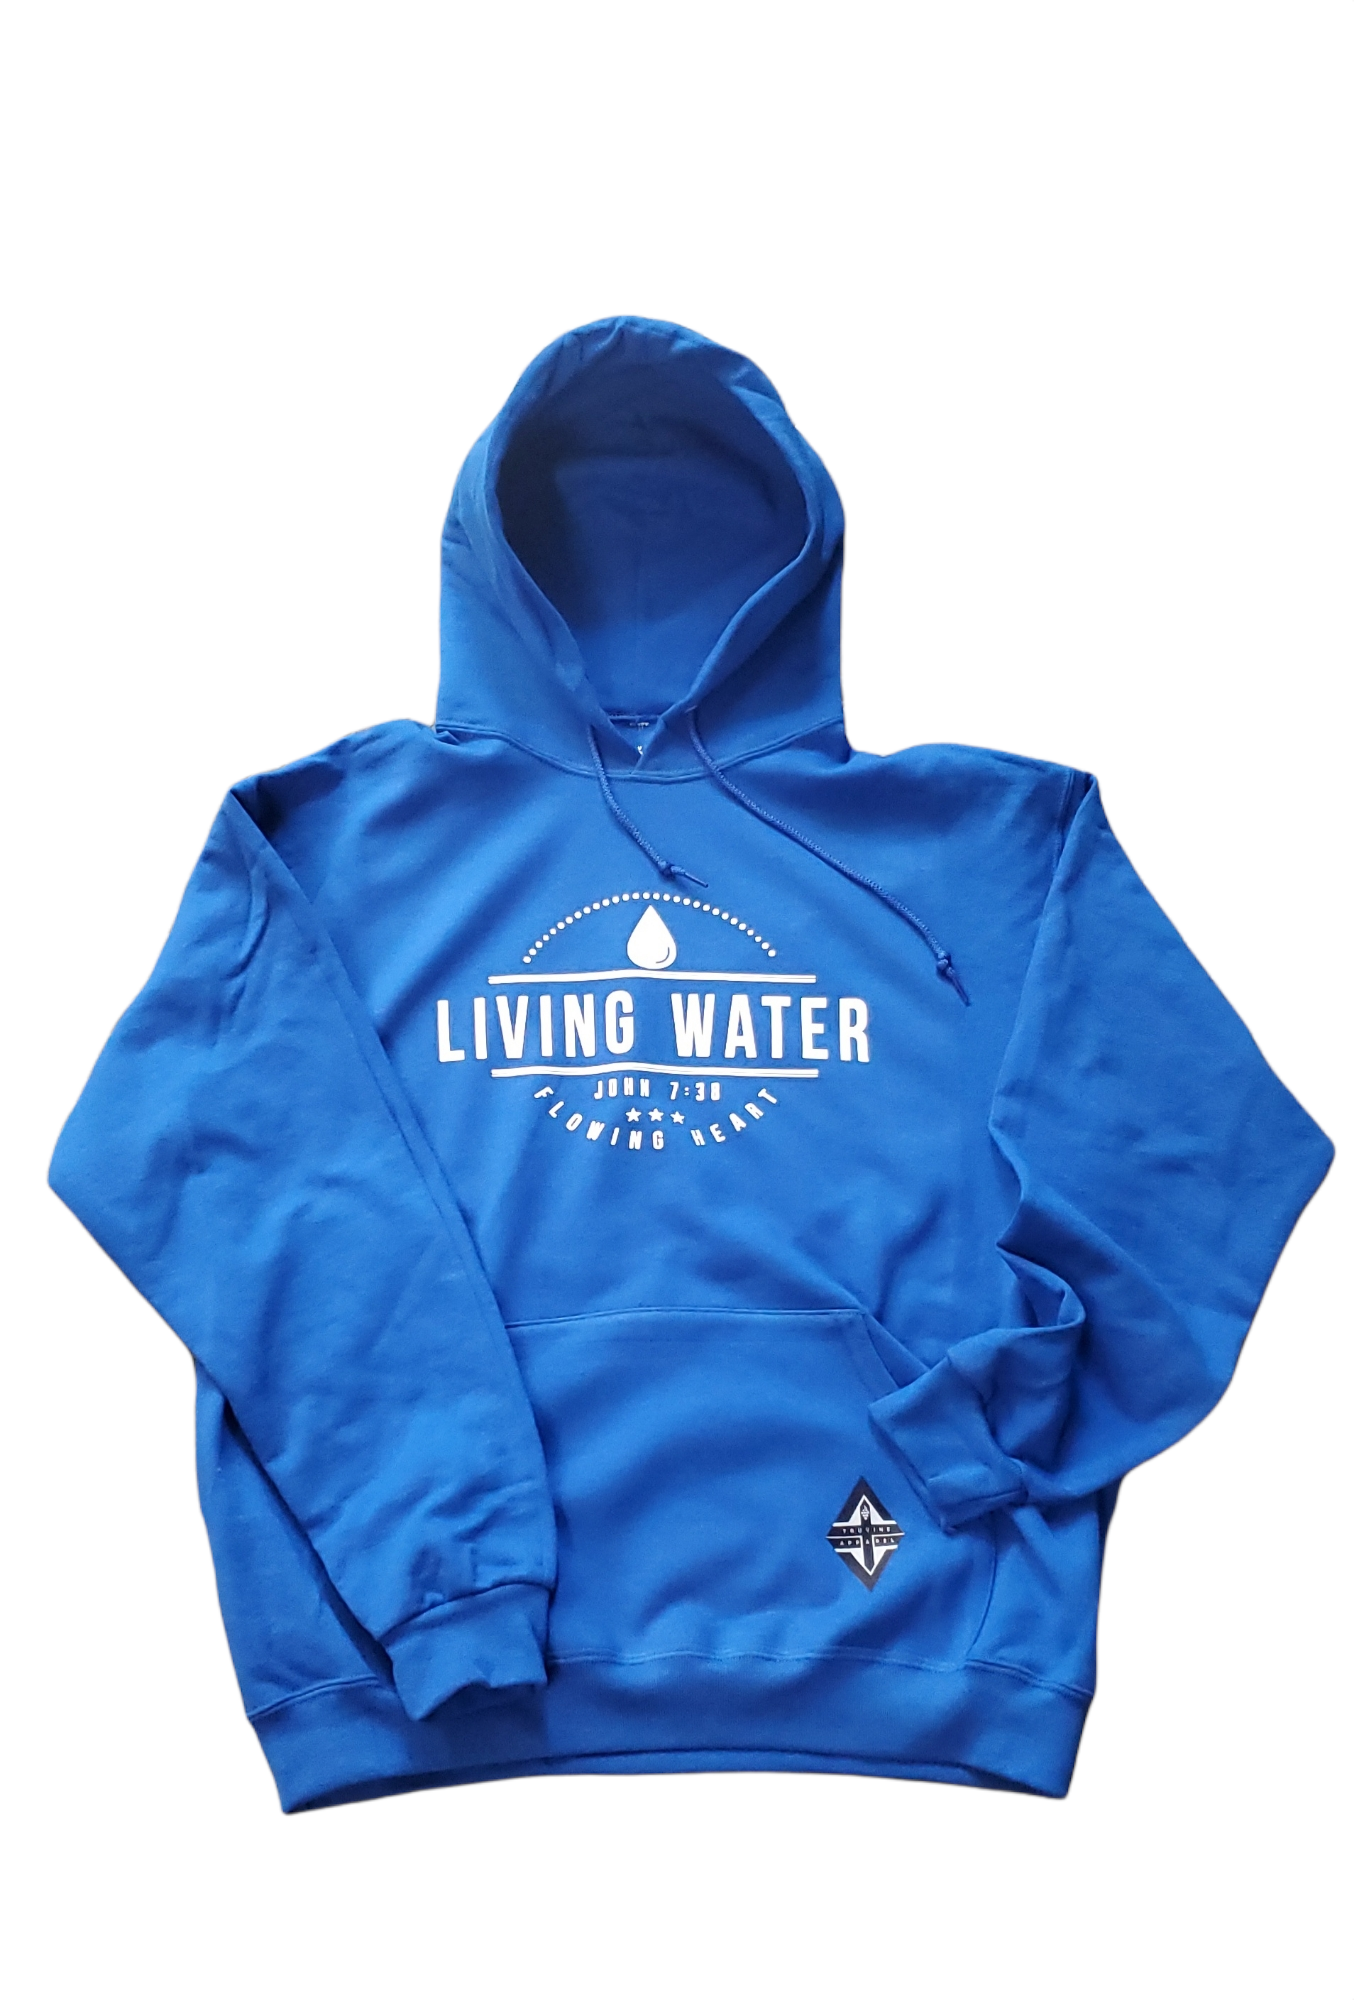 Living Water Unisex Hoodie, Christian Hoodies